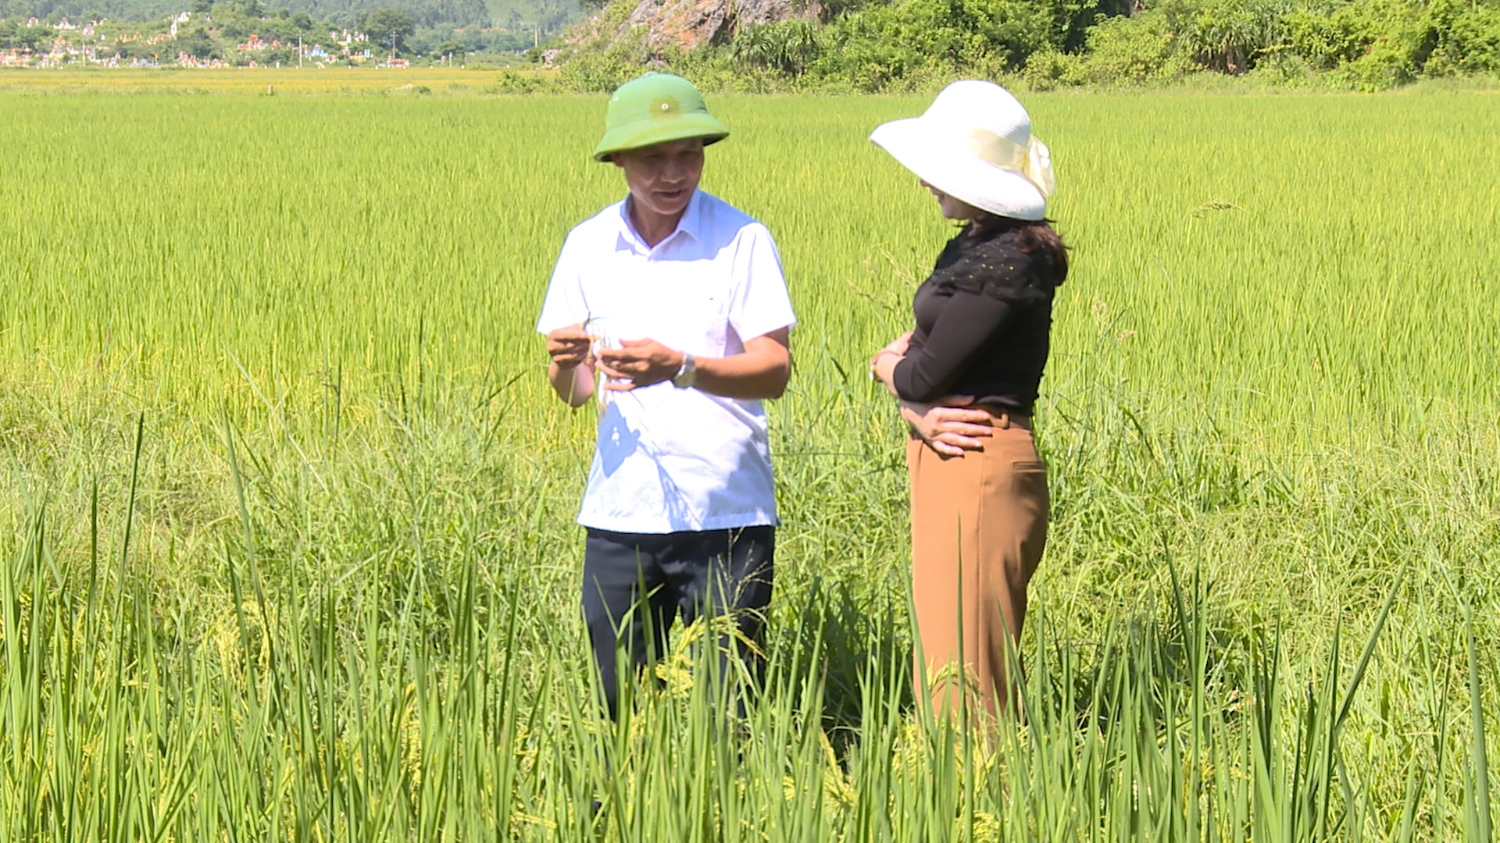 Mô hình liên kết lúa hữu cơ ST25 phát huy hiệu quả tại thôn Tiên phan, xã Quảng Tiên